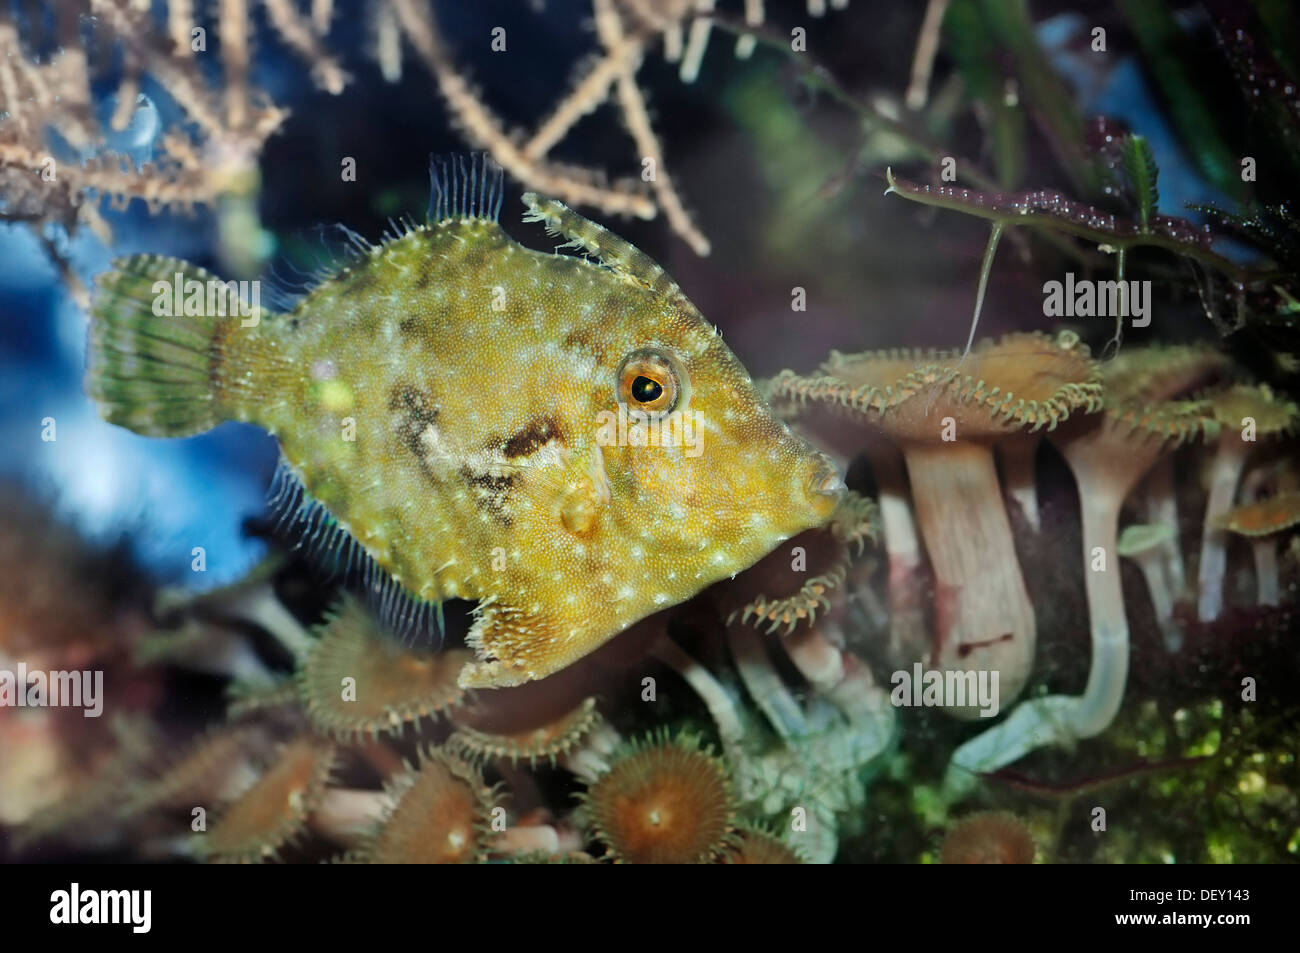 Des Balistes nattés ou fichier queue Poils-poisson (Acreichthys tomentosus), originaire de l'Australie, l'Indonésie et le Japon, en captivité Banque D'Images